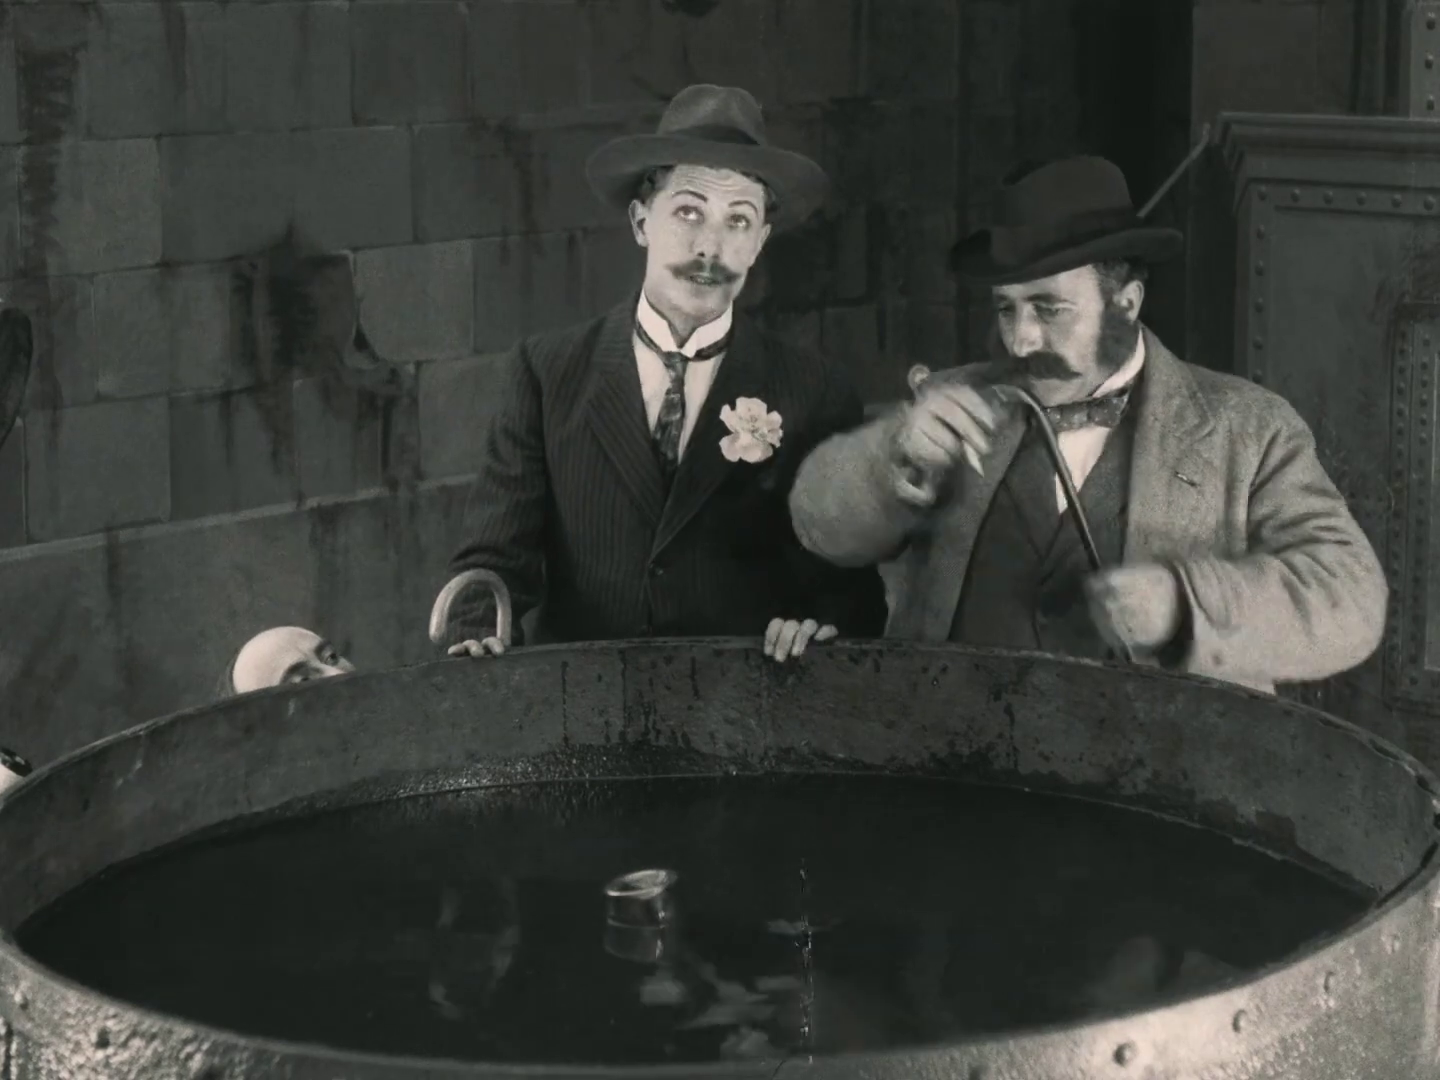 Georges Melchior et Edmond Bréon dans le film muet français Fantômas (1913/1914) de Louis Feuillade